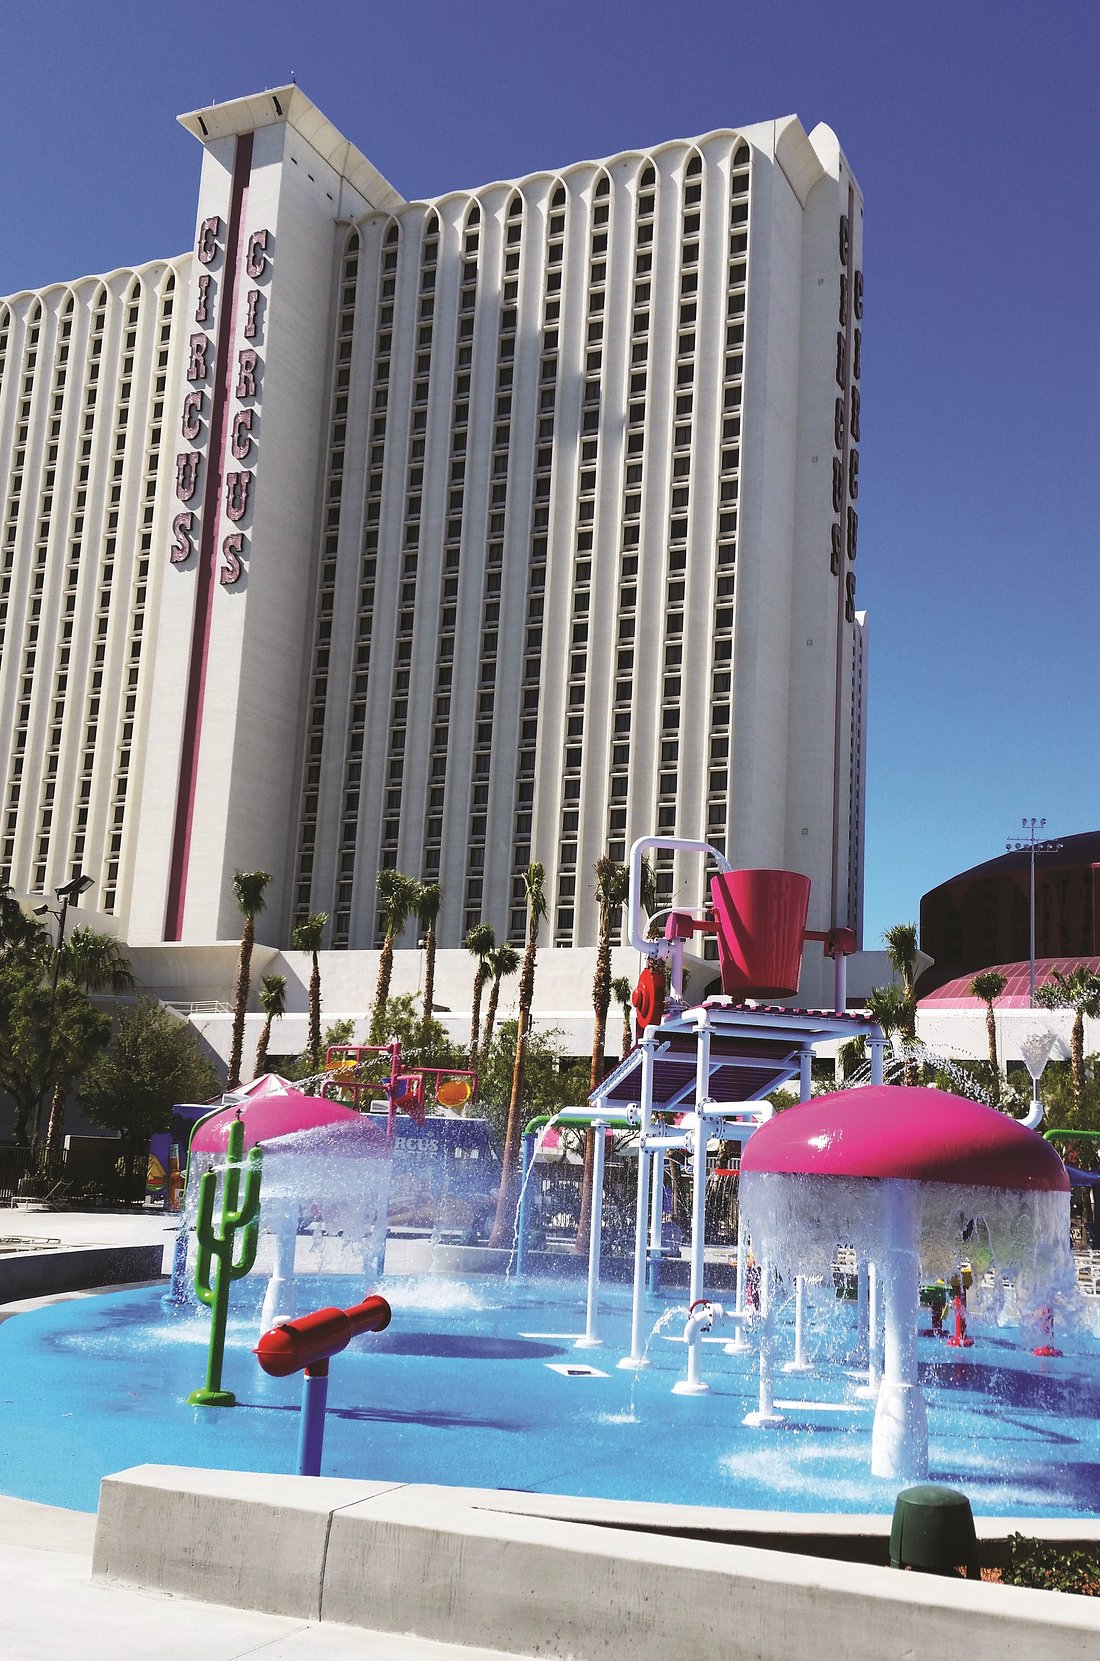 Fotos y opiniones la piscina del Circus Hotel & Casino Las Vegas - Tripadvisor